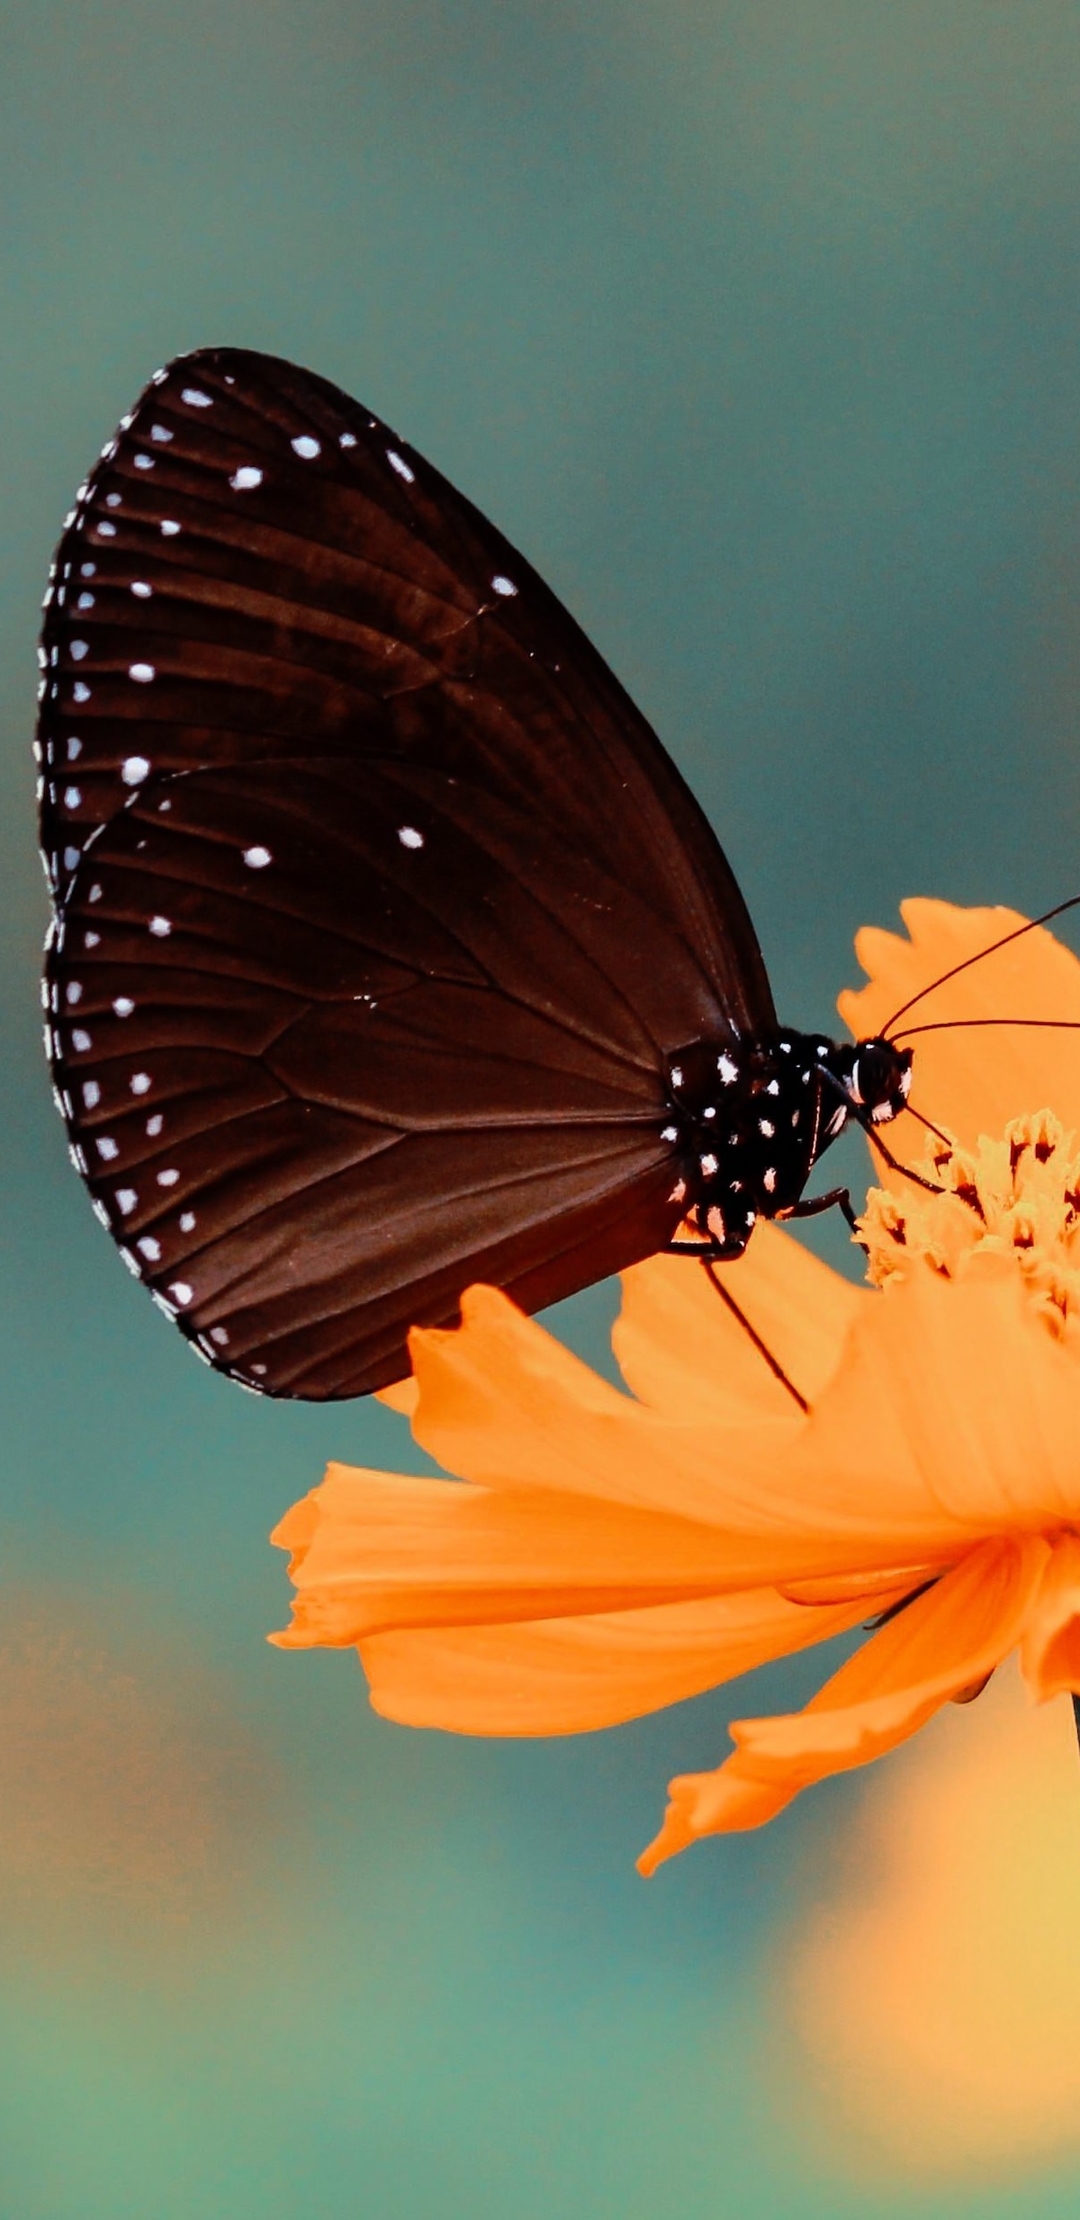 Картинка: Бабочка, цветок, жёлтый, размытый фон